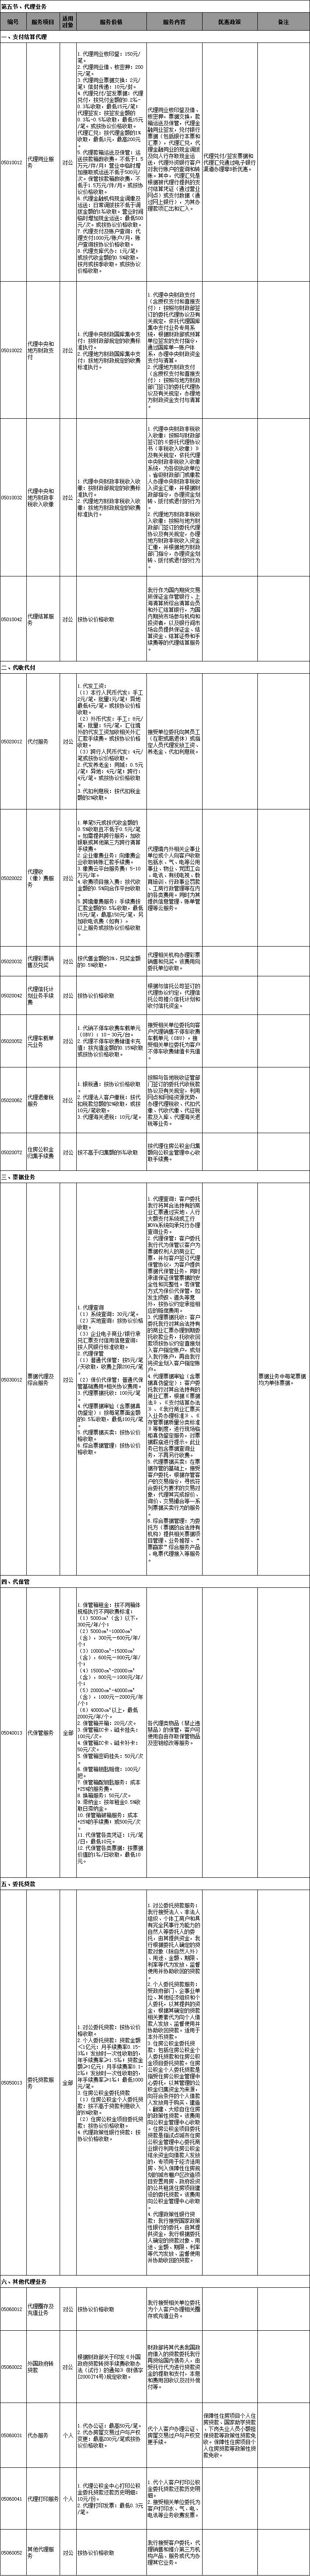 中国工商银行服务价目表(2017年版)